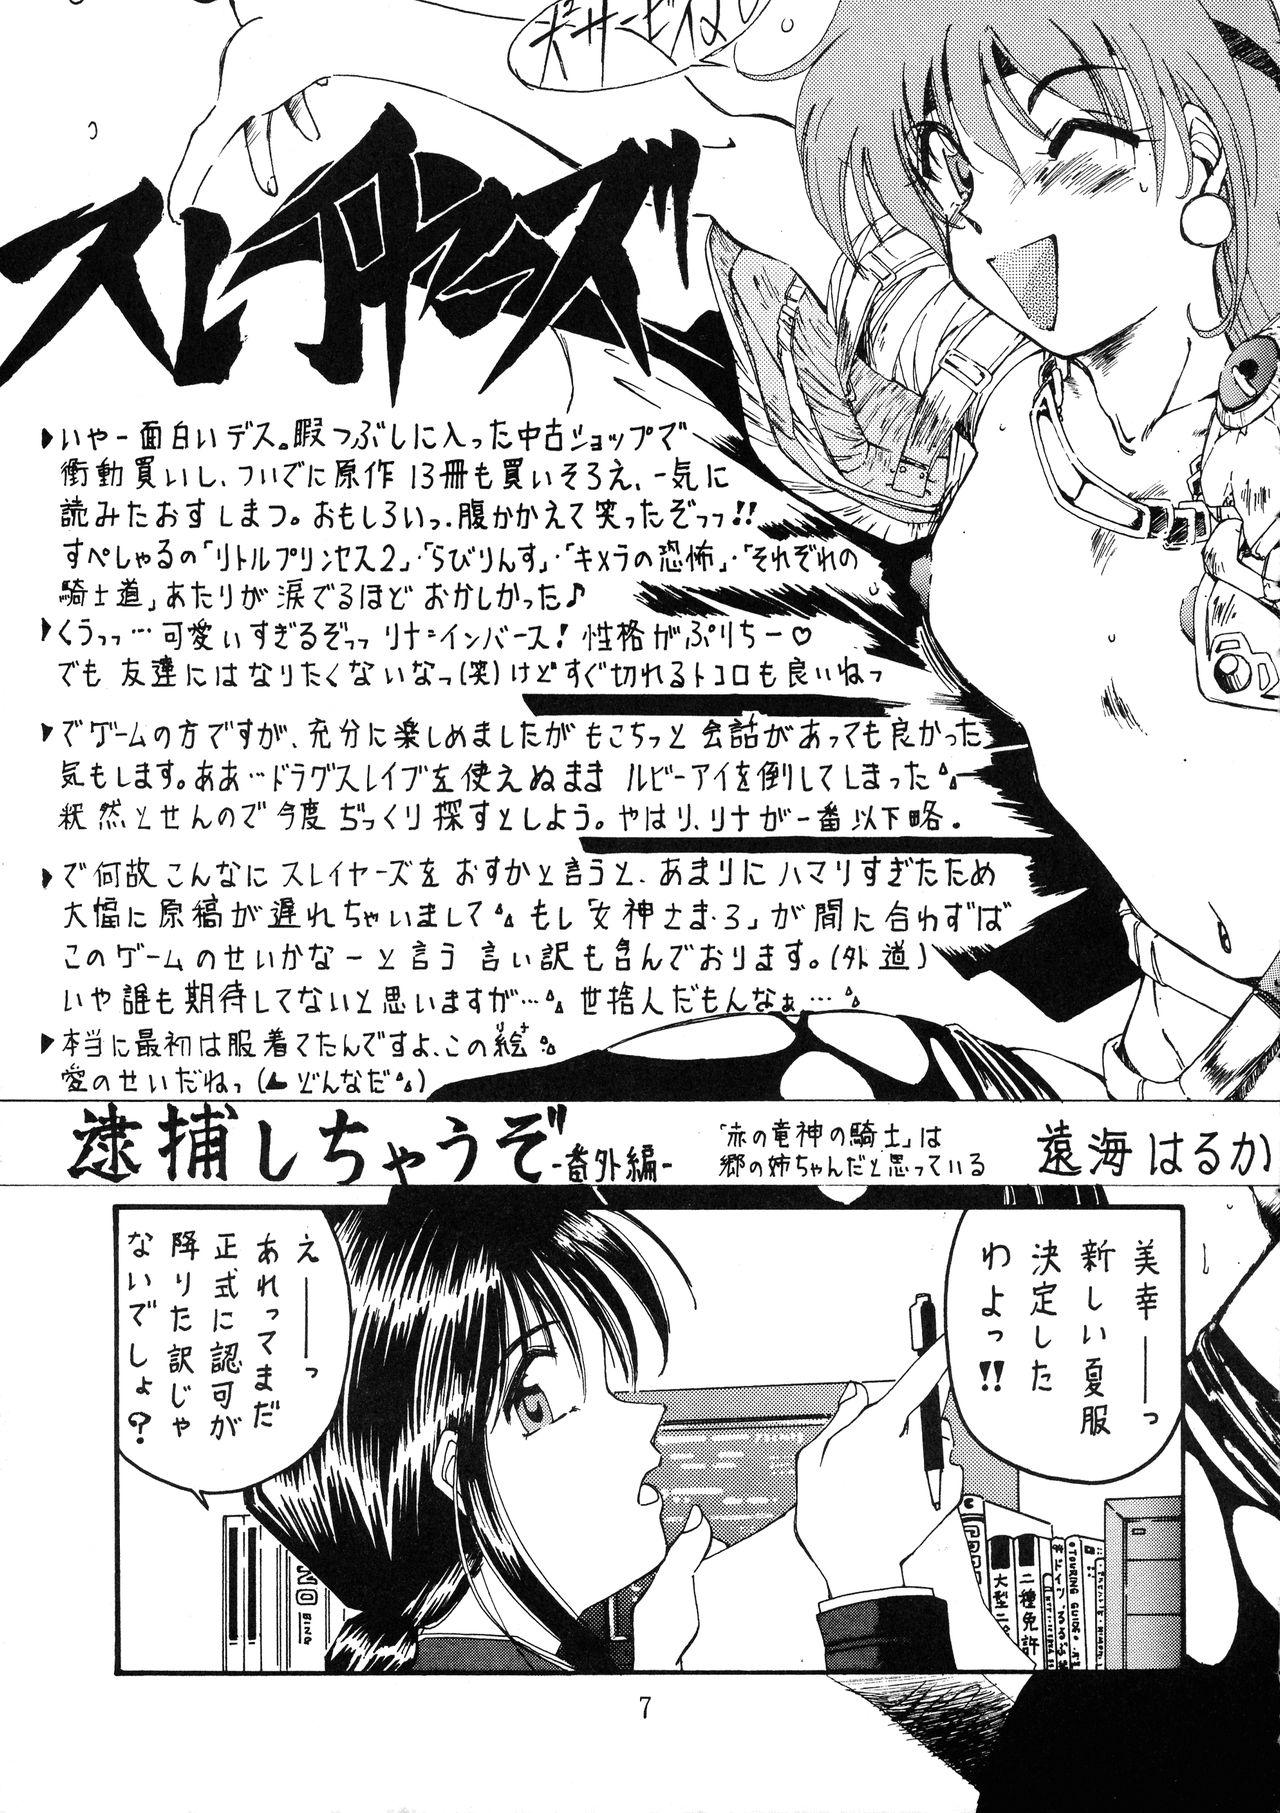 Adult Goku tamashi Playing - Page 7